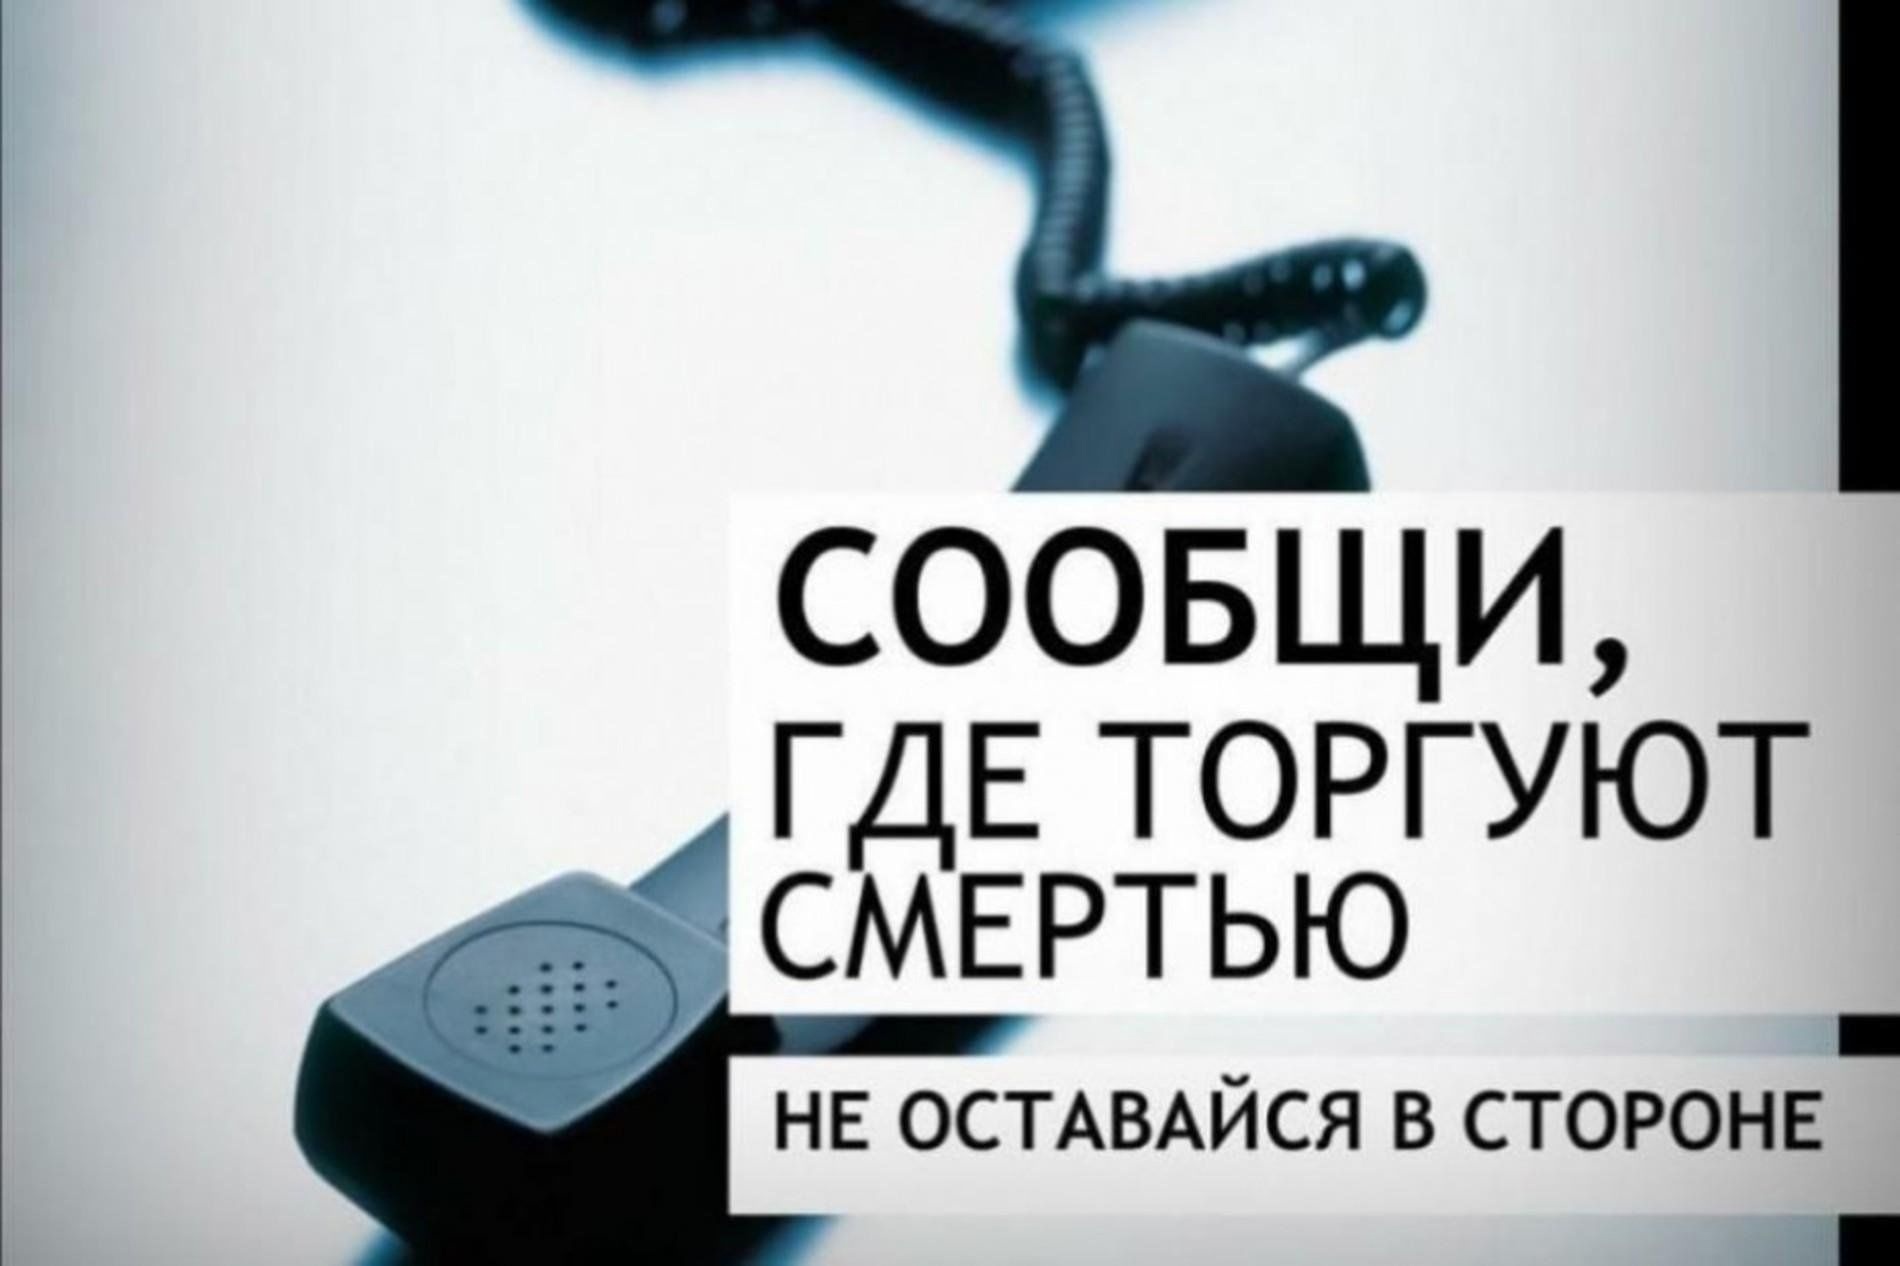 Общероссийская антинаркотическая акция «Сообщи, где торгуют смертью!».